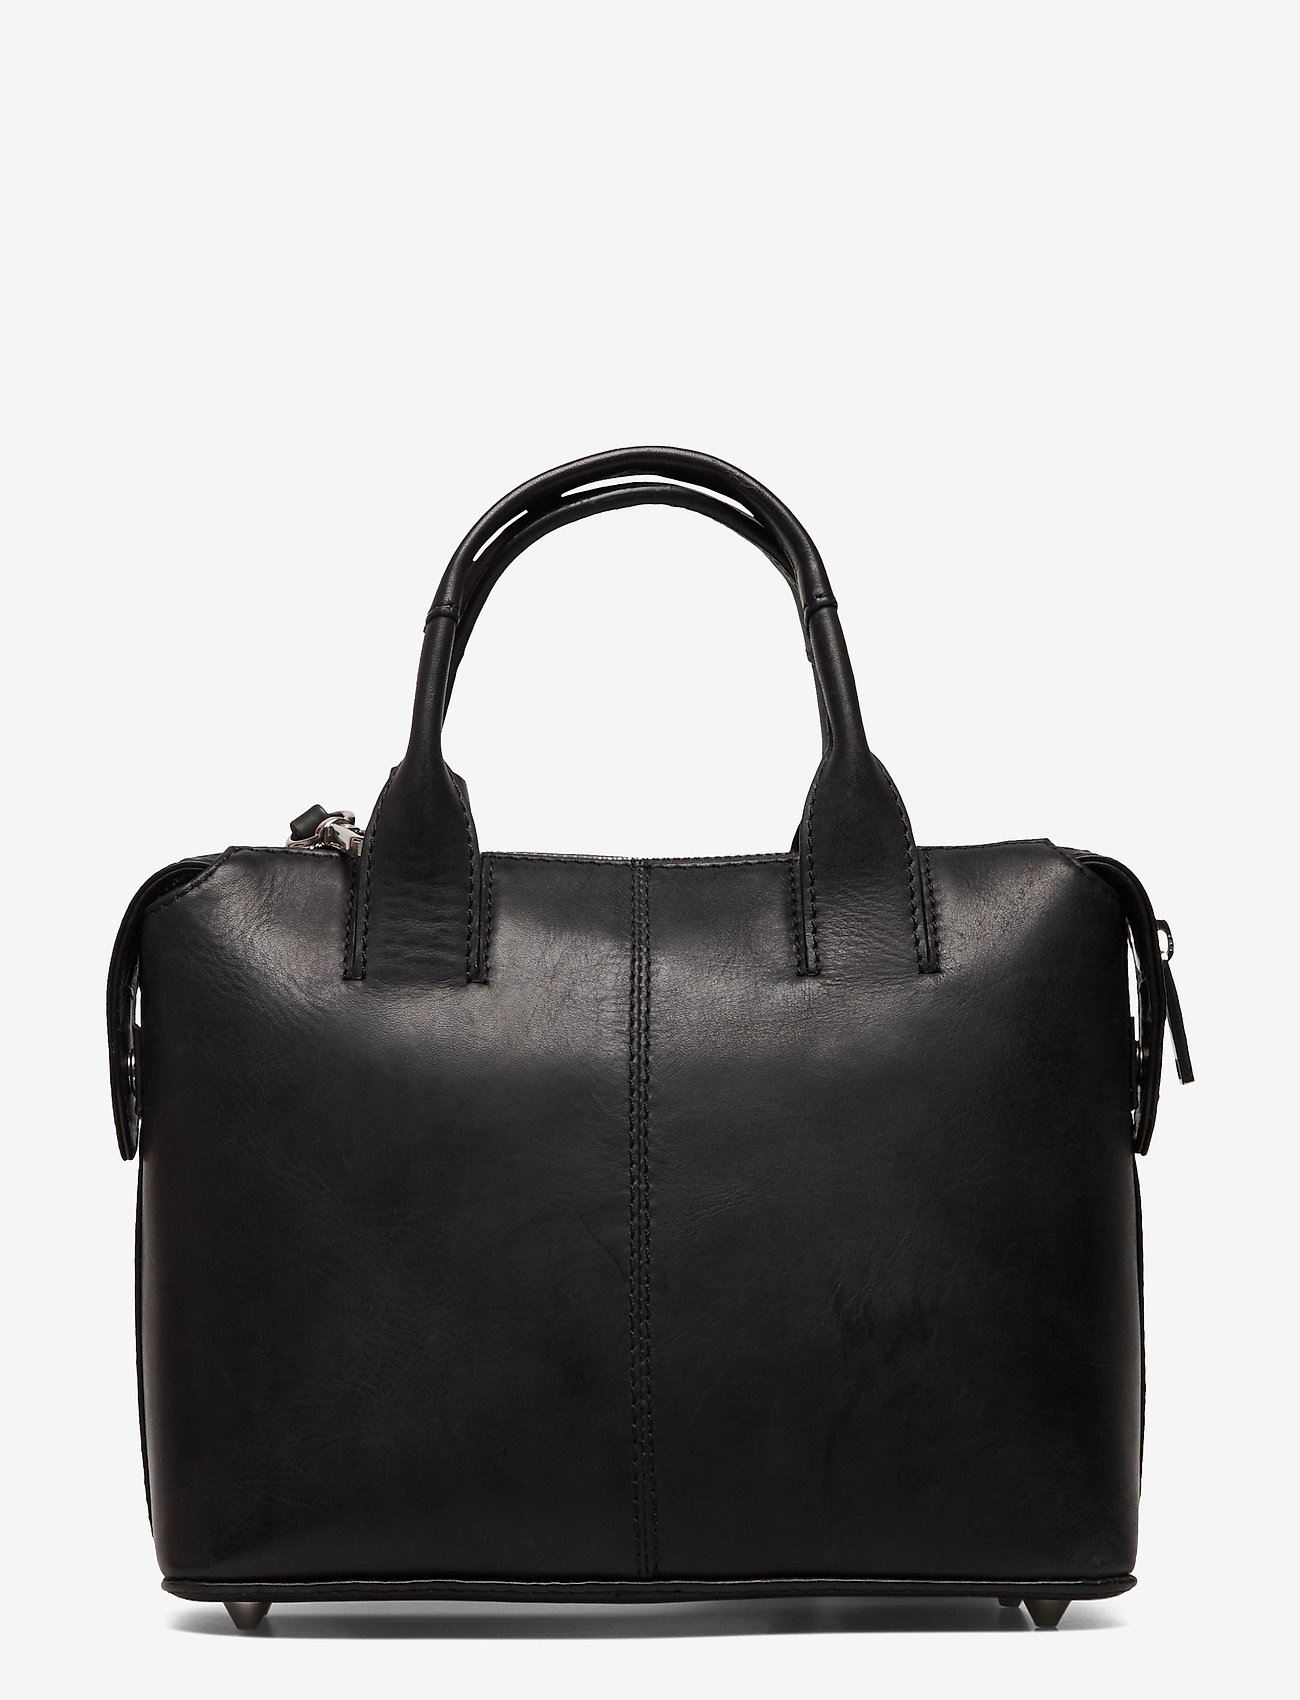 Markberg - Abrielle Small Bag, Antique - odzież imprezowa w cenach outletowych - black w/black - 1